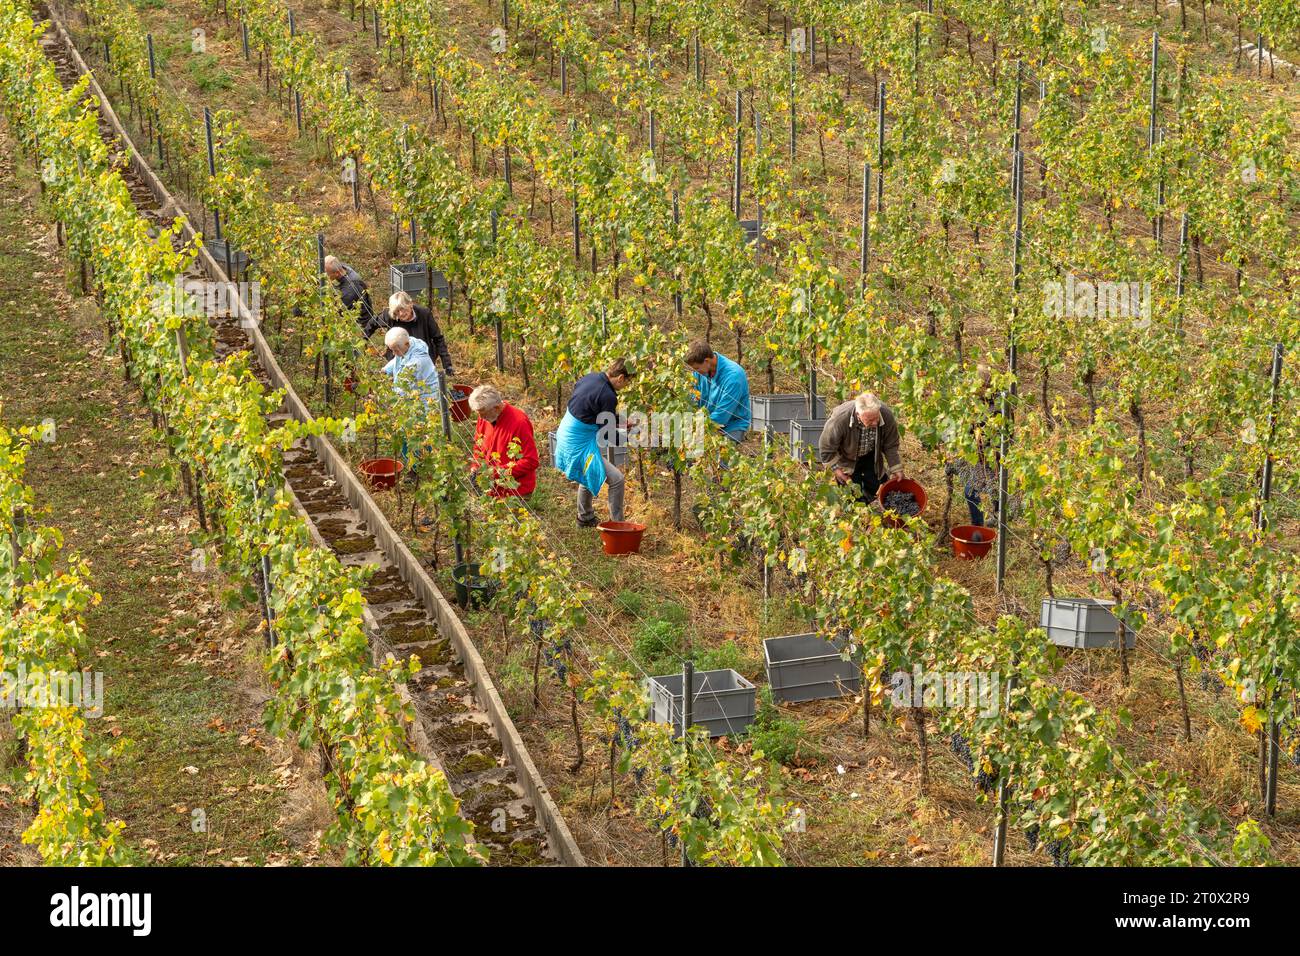 Weinlese am Weinberg in Esslingen am Neckar, Baden-Württemberg, Deutschland  |  grape harvest in a vineyard, Esslingen am Neckar, Baden-Württemberg, G Stock Photo